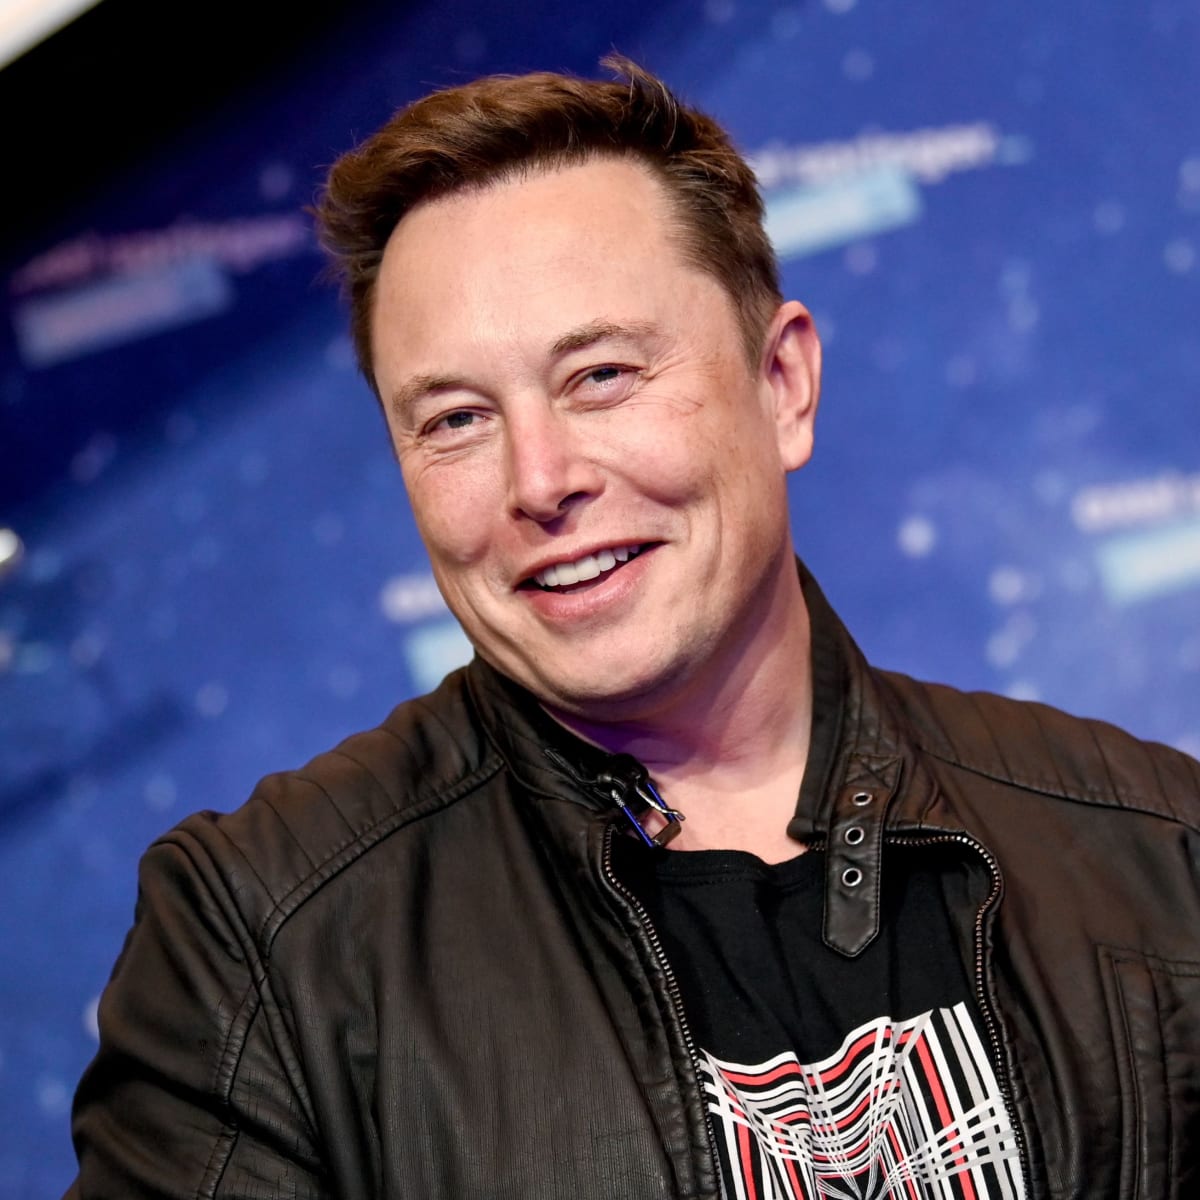 Tài sản của Elon Musk tăng thêm tới hơn 30 tỷ USD chỉ trong một ngày, sau khi Tesla đạt kỷ lục về việc giao hàng. Ảnh: @AFP.